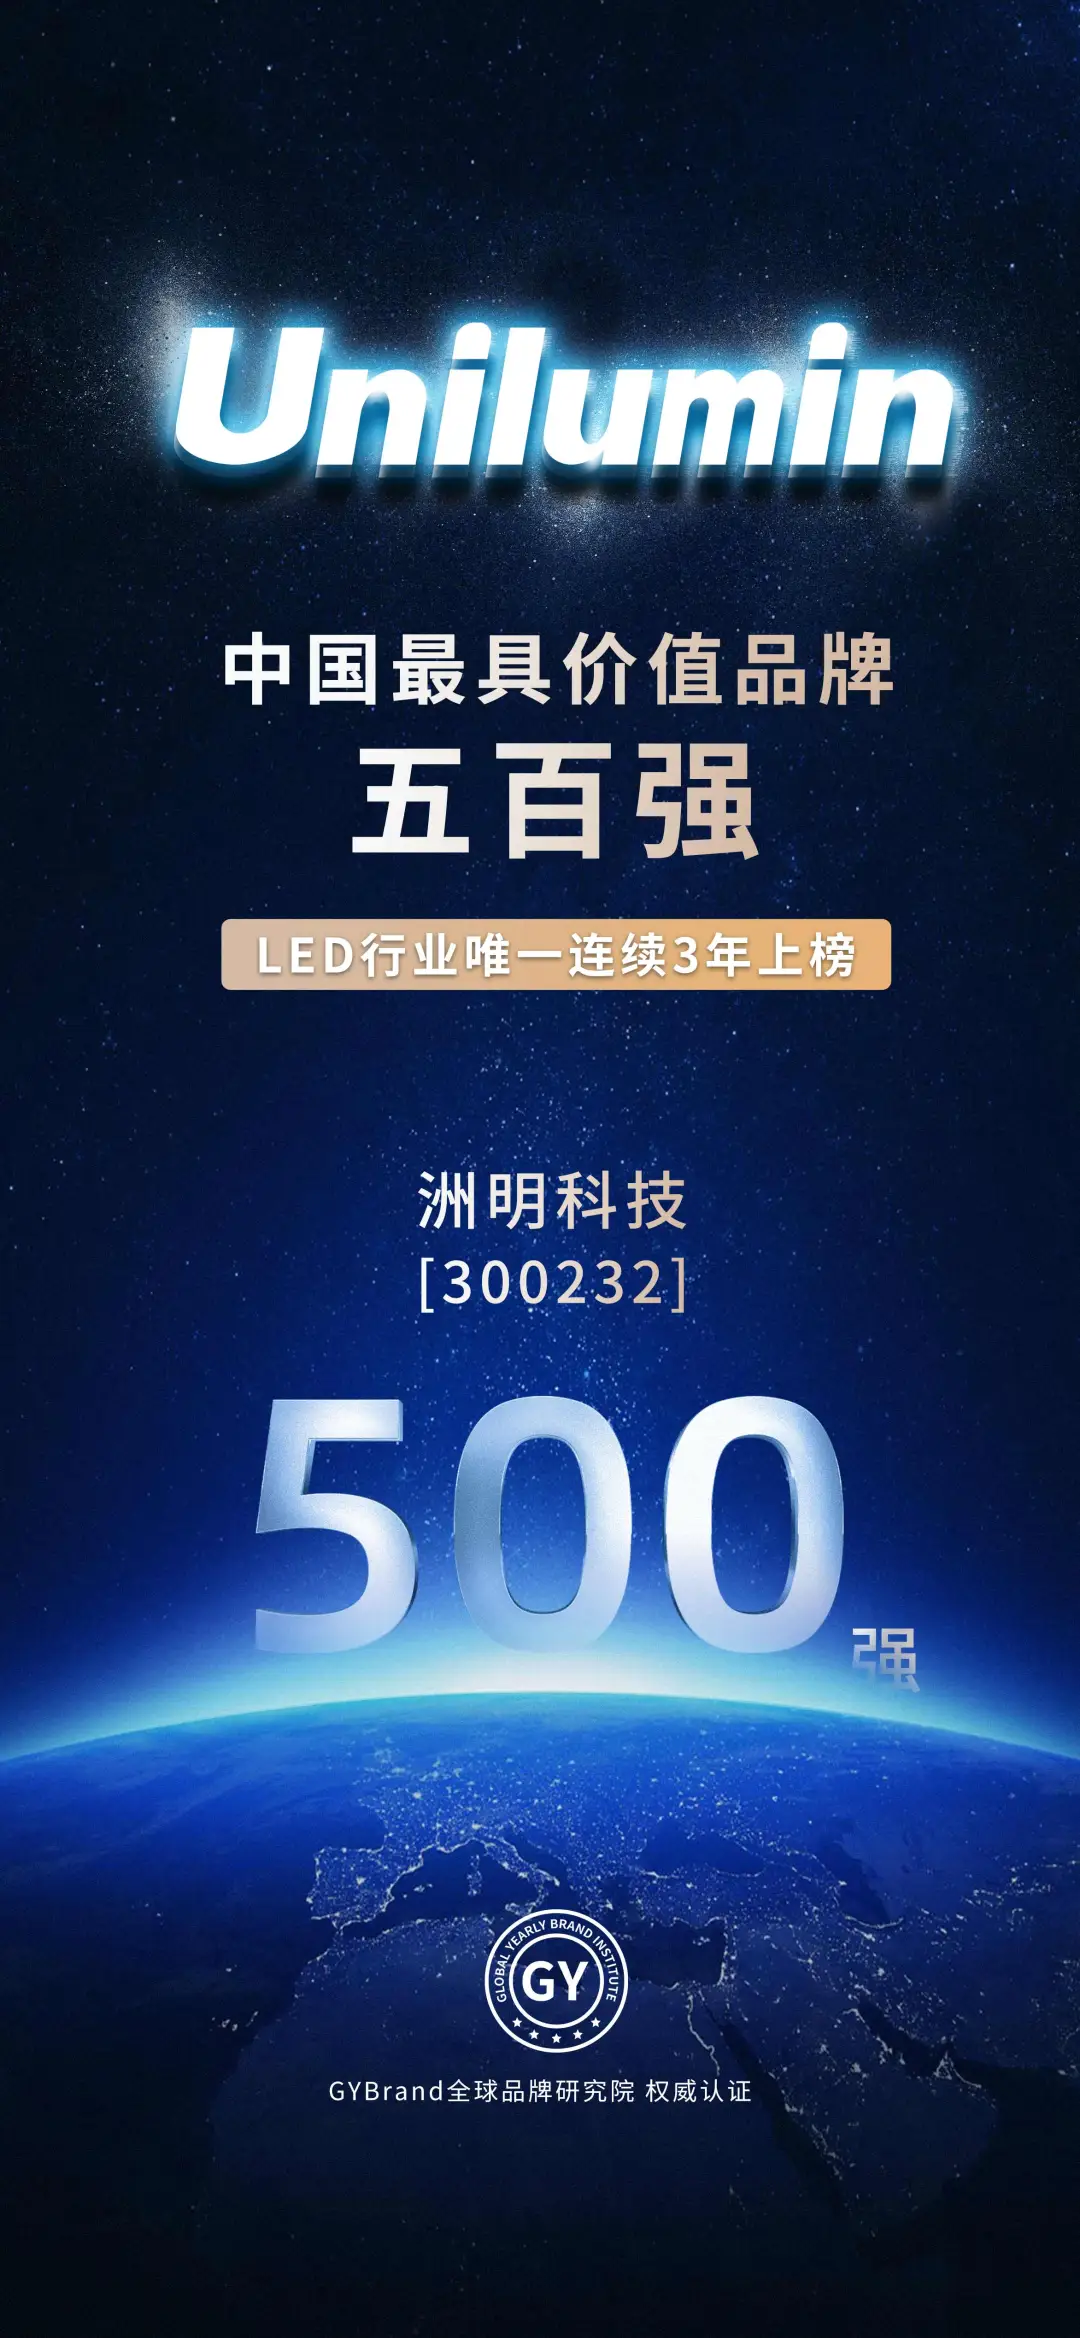 洲明科技获得GYBrand中国最具价值品牌500强权威认证